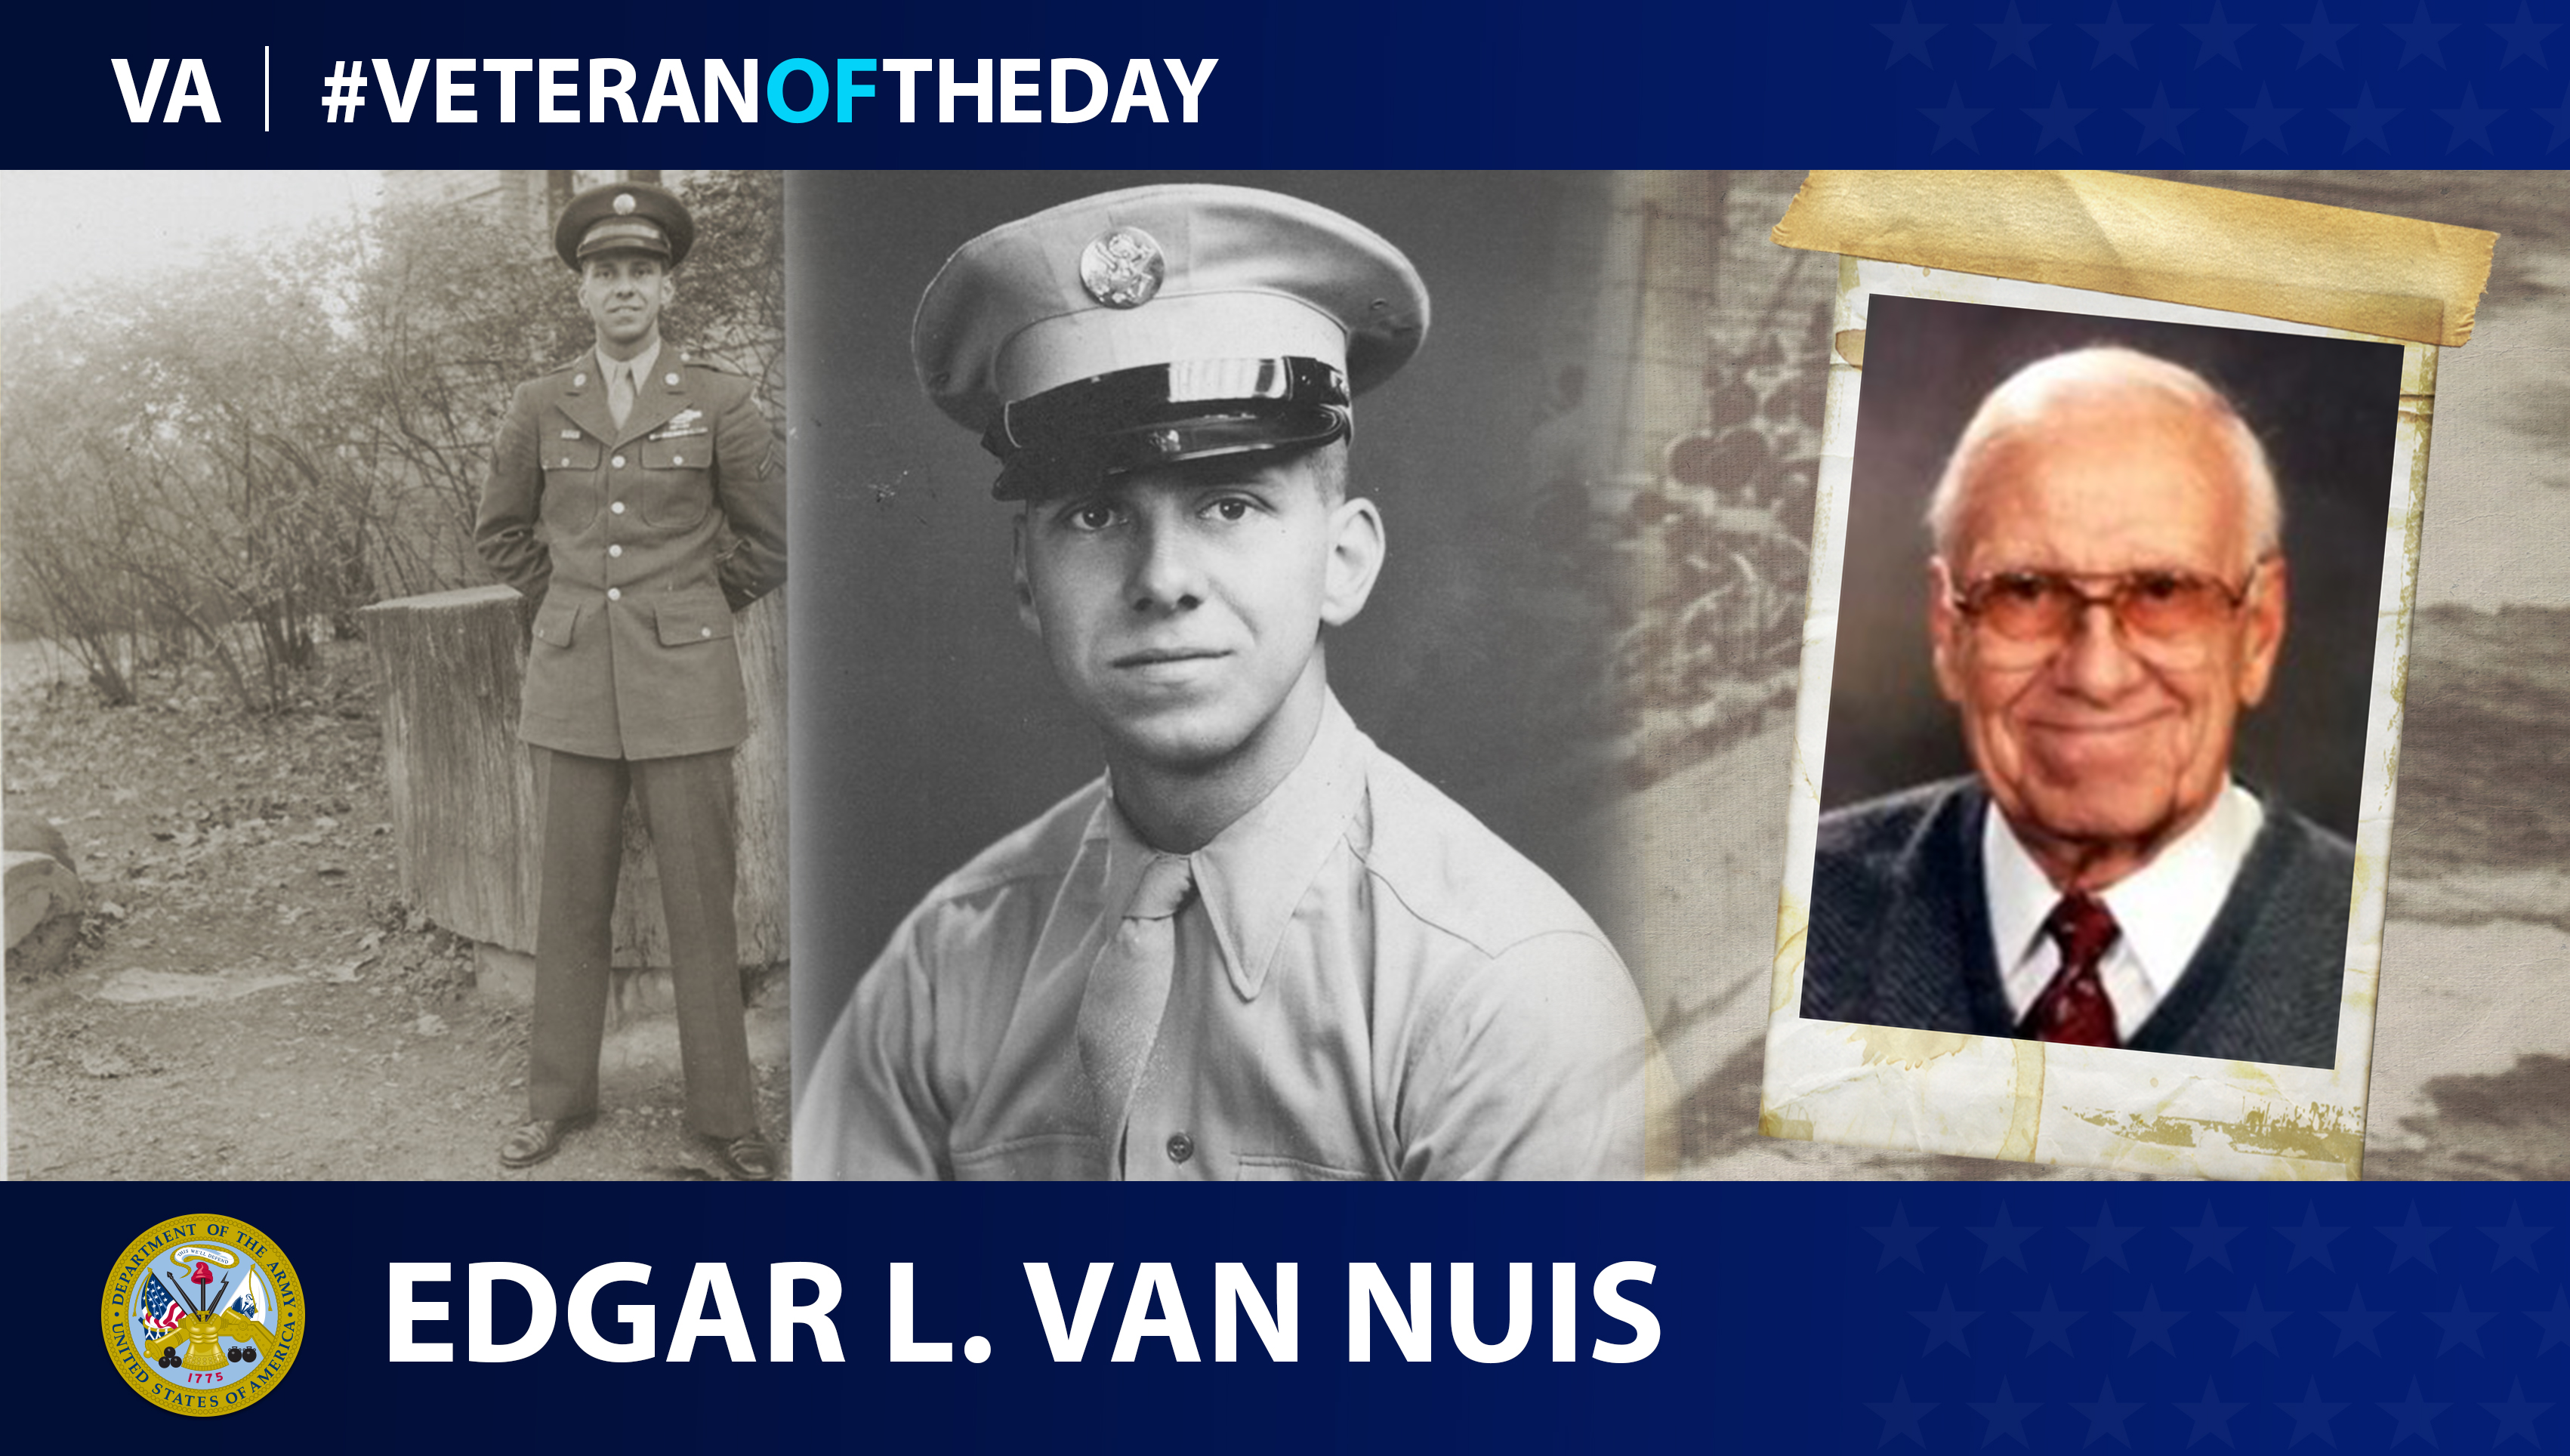 Army Veteran Edgar L. Van Nuis is today's Veteran of the Day.